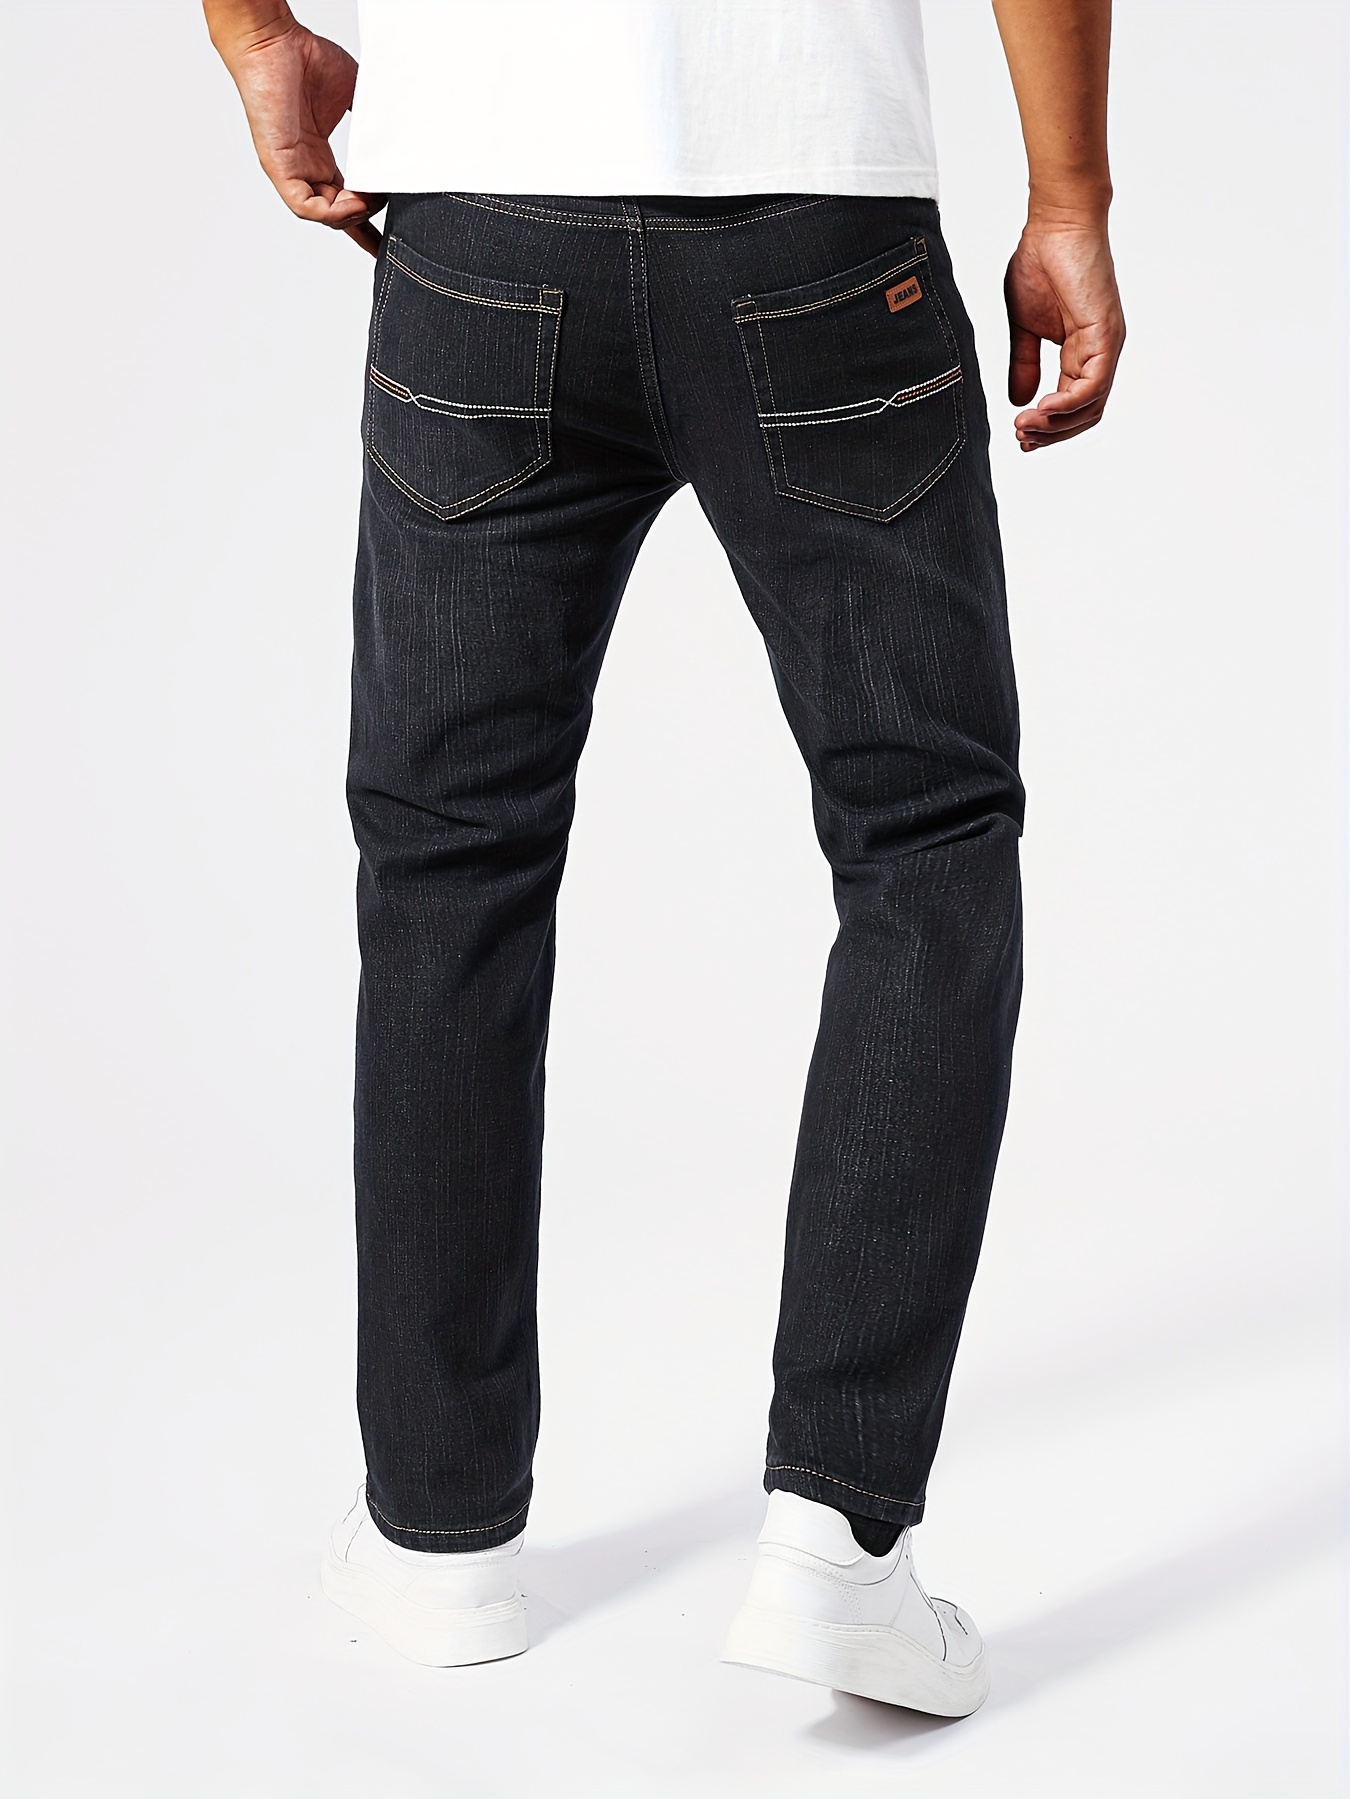 Полуформальные джинсы классического дизайна, мужские повседневные брюки из эластичной джинсовой ткани для бизнеса